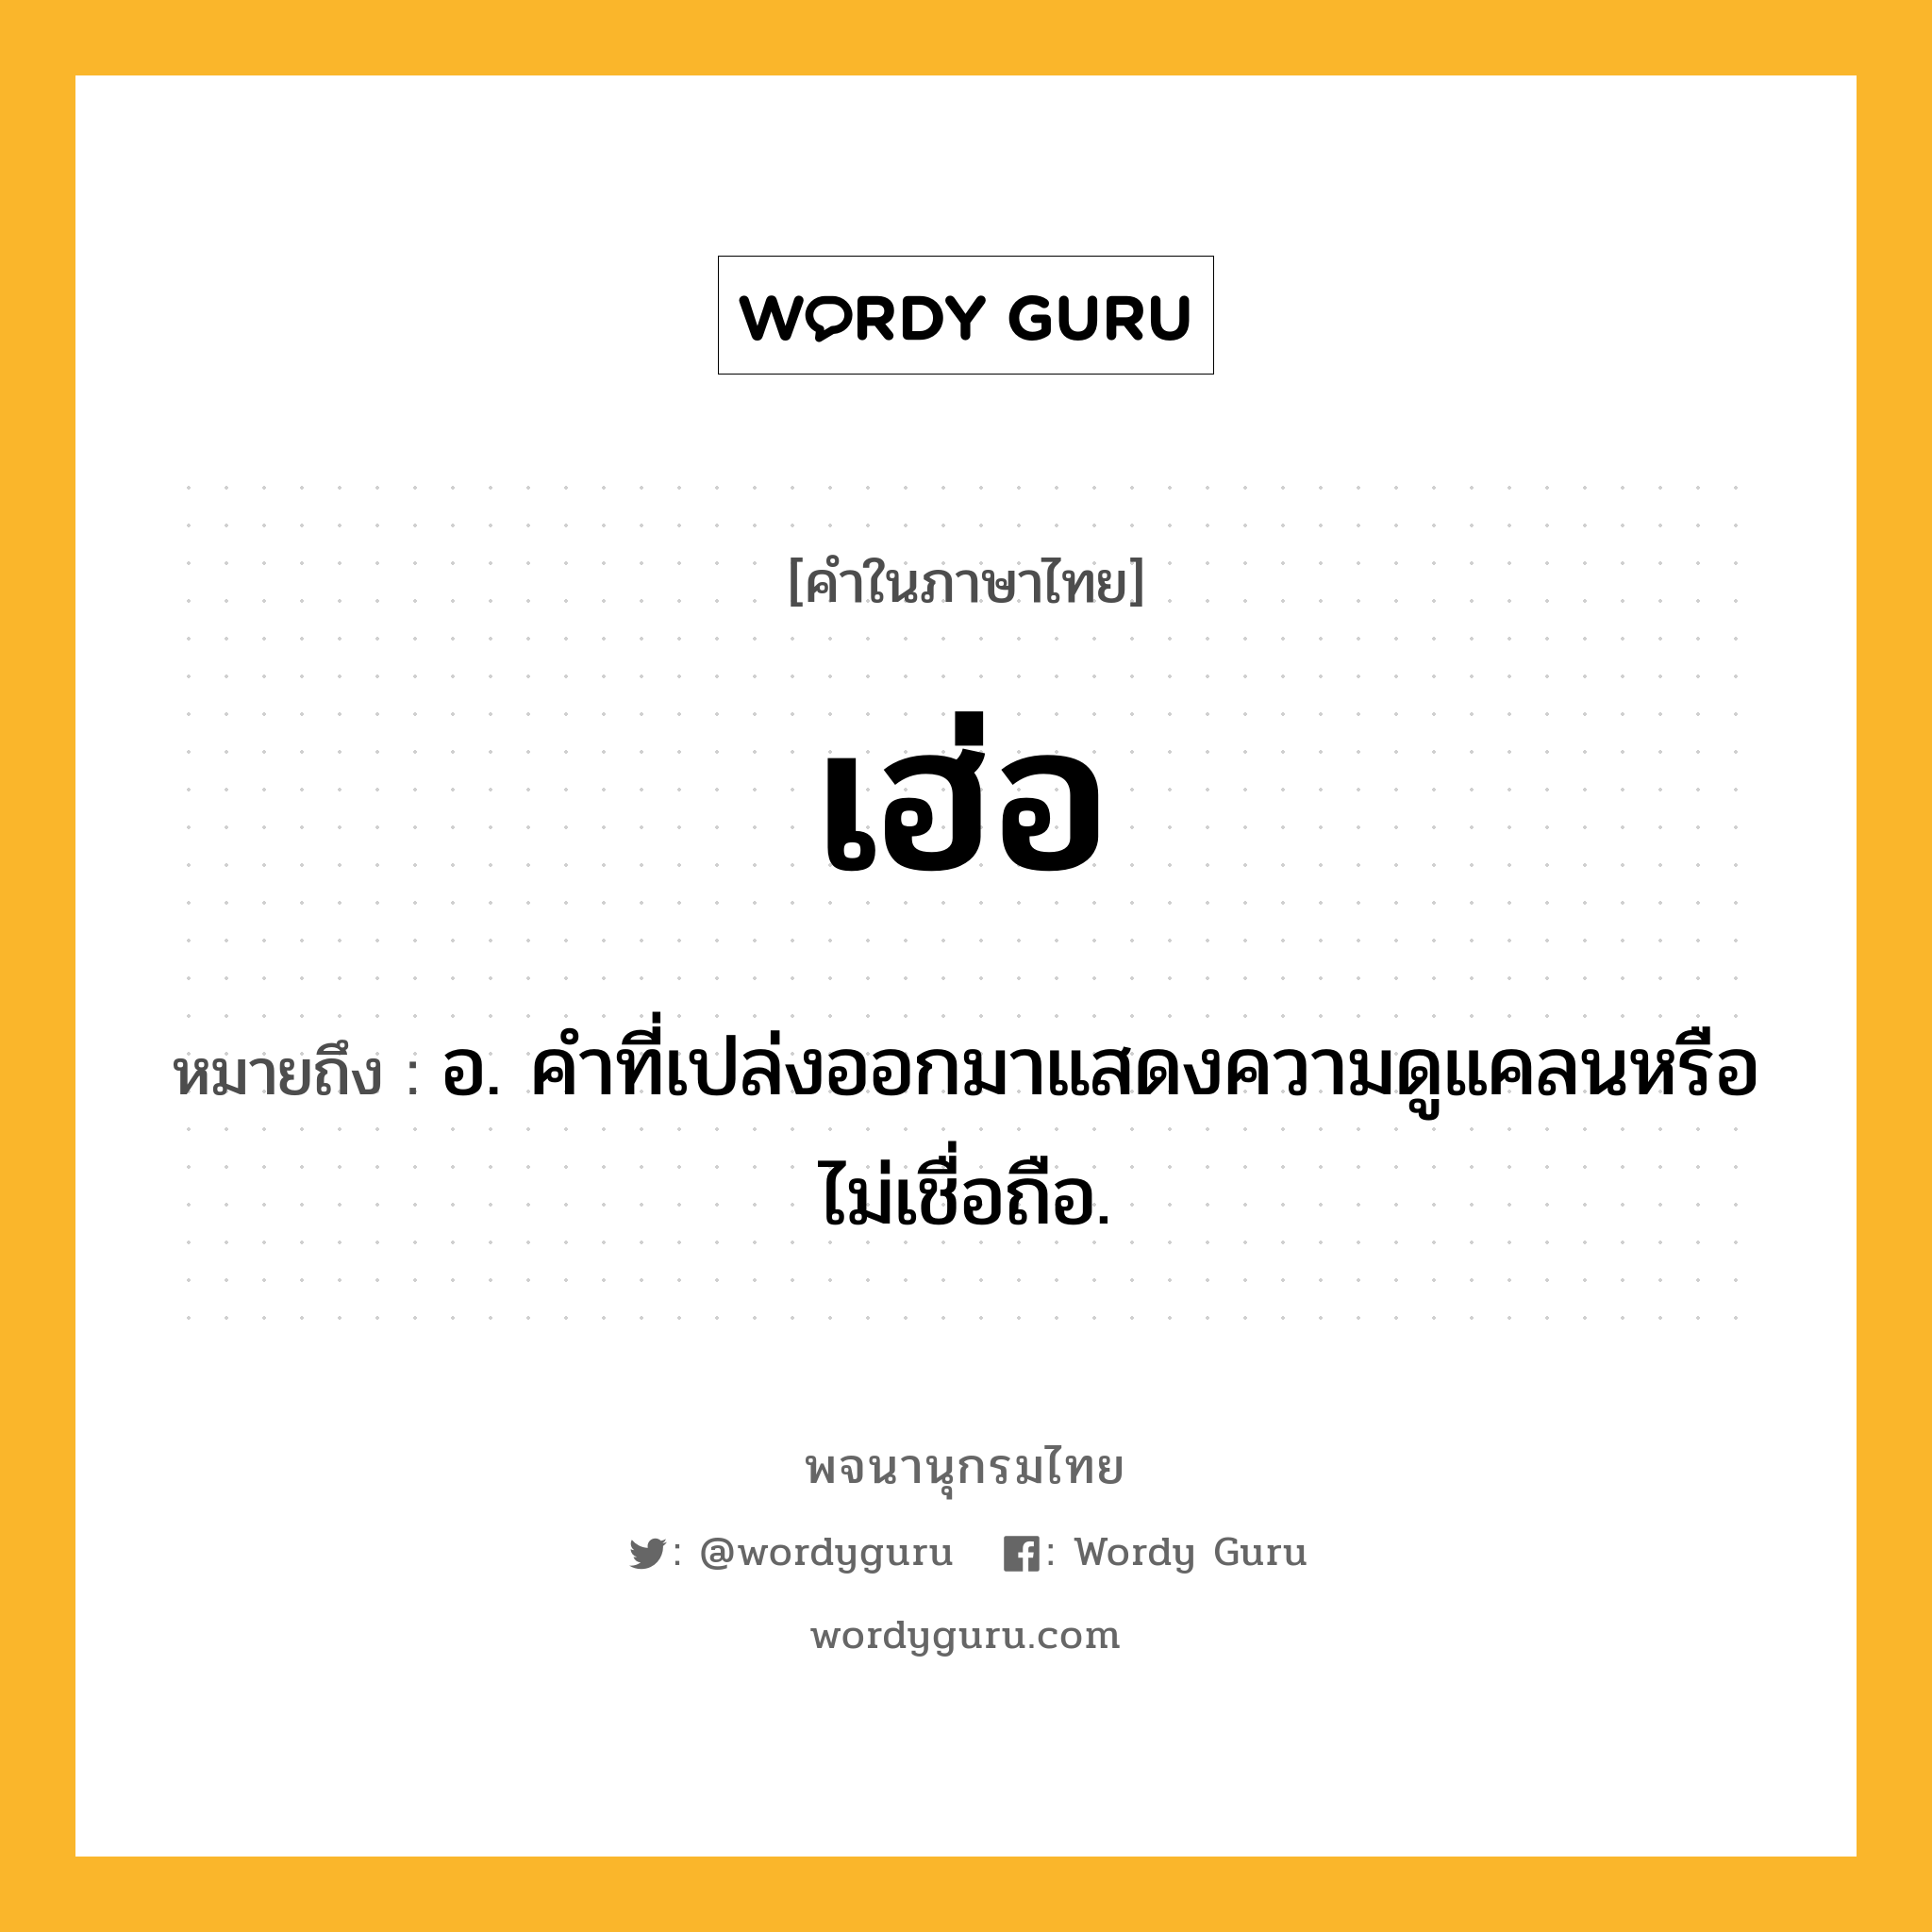 เฮ่อ ความหมาย หมายถึงอะไร?, คำในภาษาไทย เฮ่อ หมายถึง อ. คำที่เปล่งออกมาแสดงความดูแคลนหรือไม่เชื่อถือ.